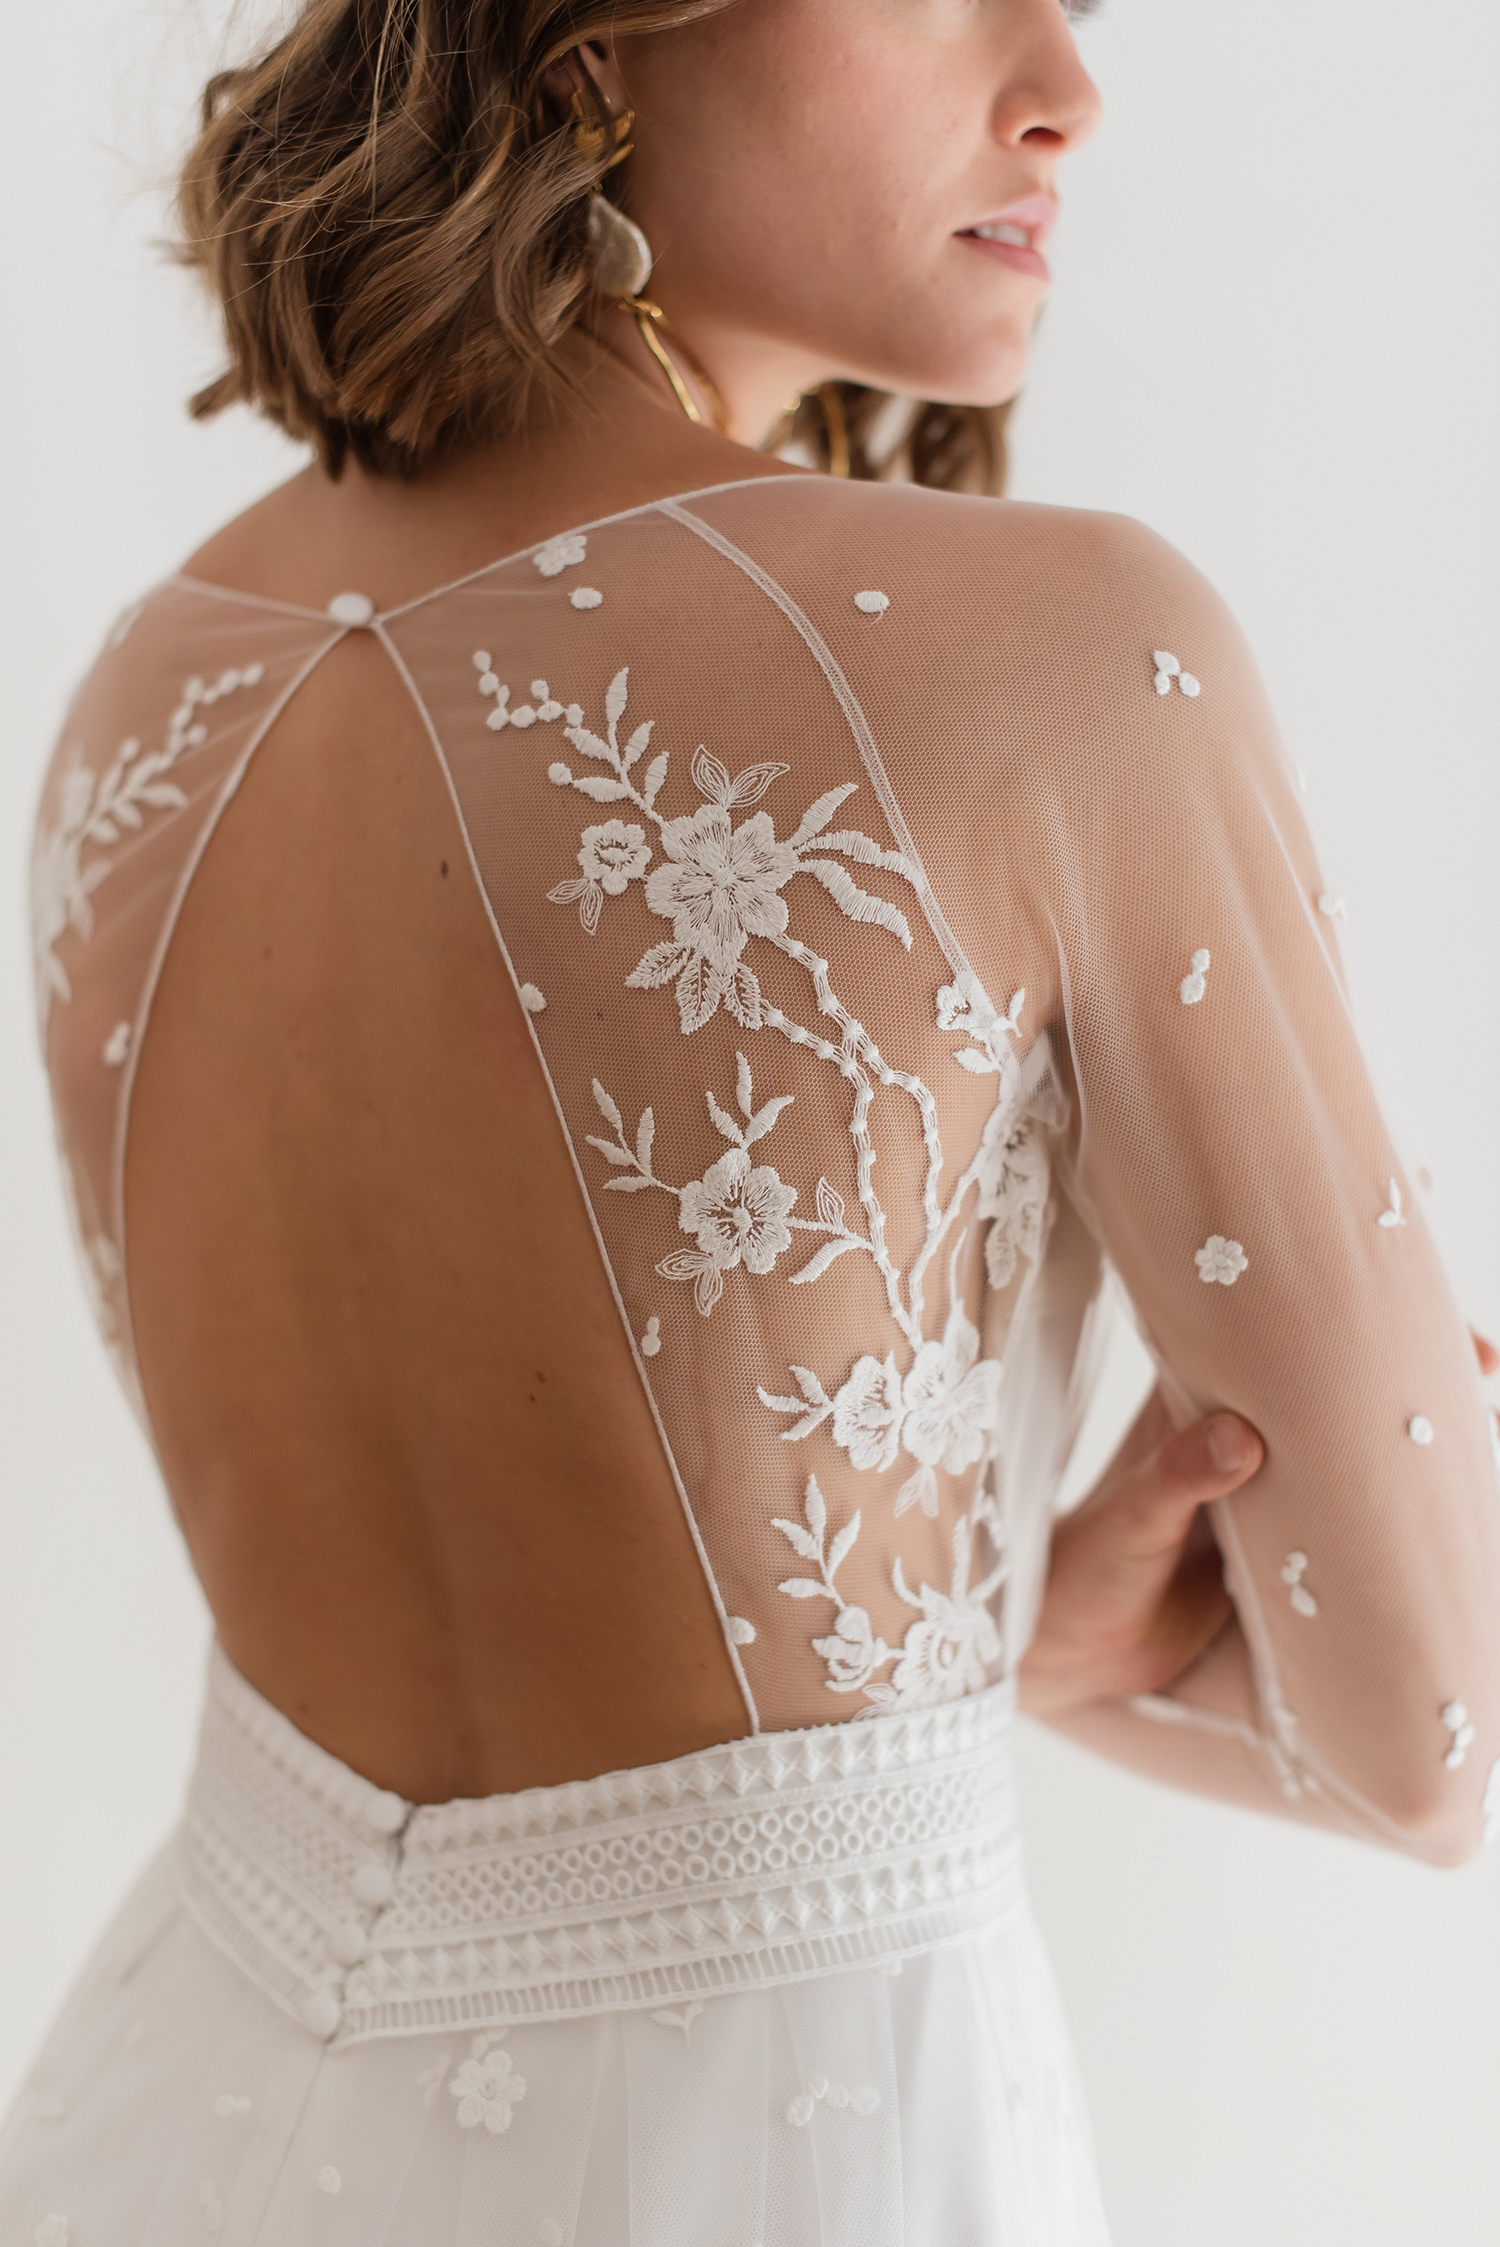 aurelia hoang open back wedding gown